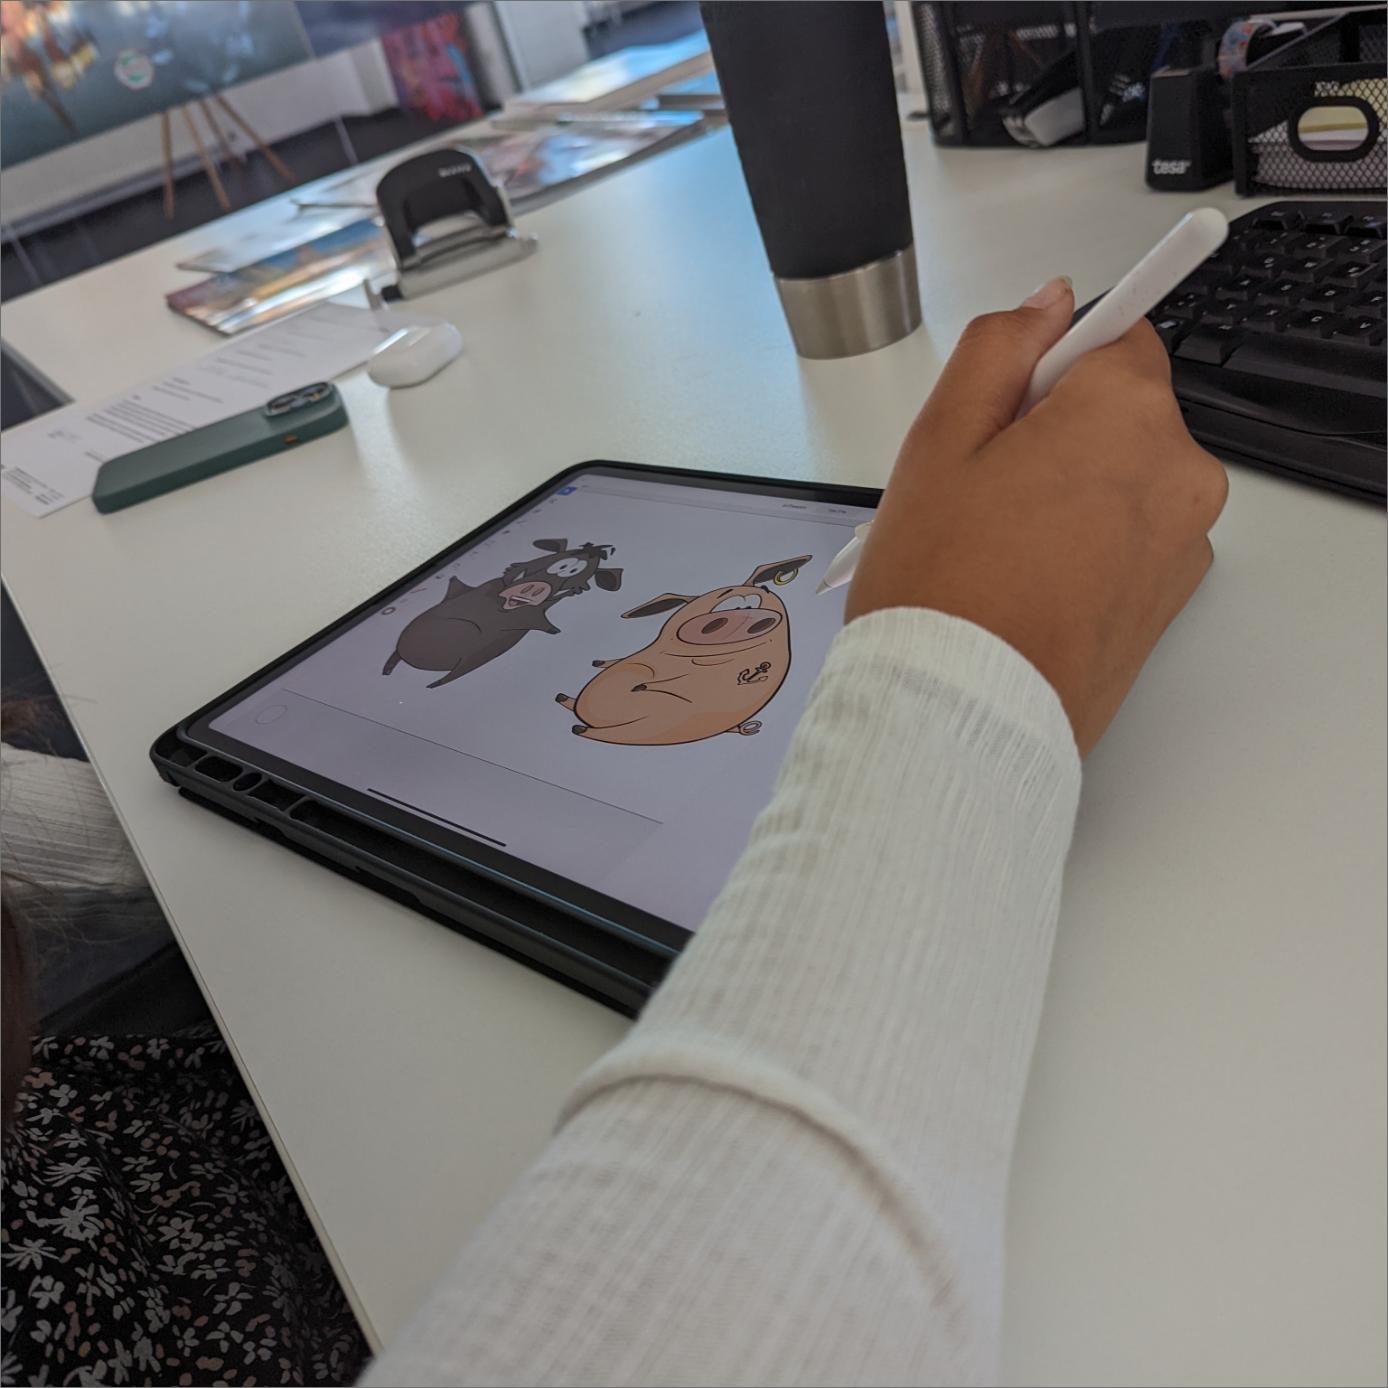 Detailausschnitt der Hand beim Zeichnen mit einem Wildschwein und Schwein auf dem Tablet